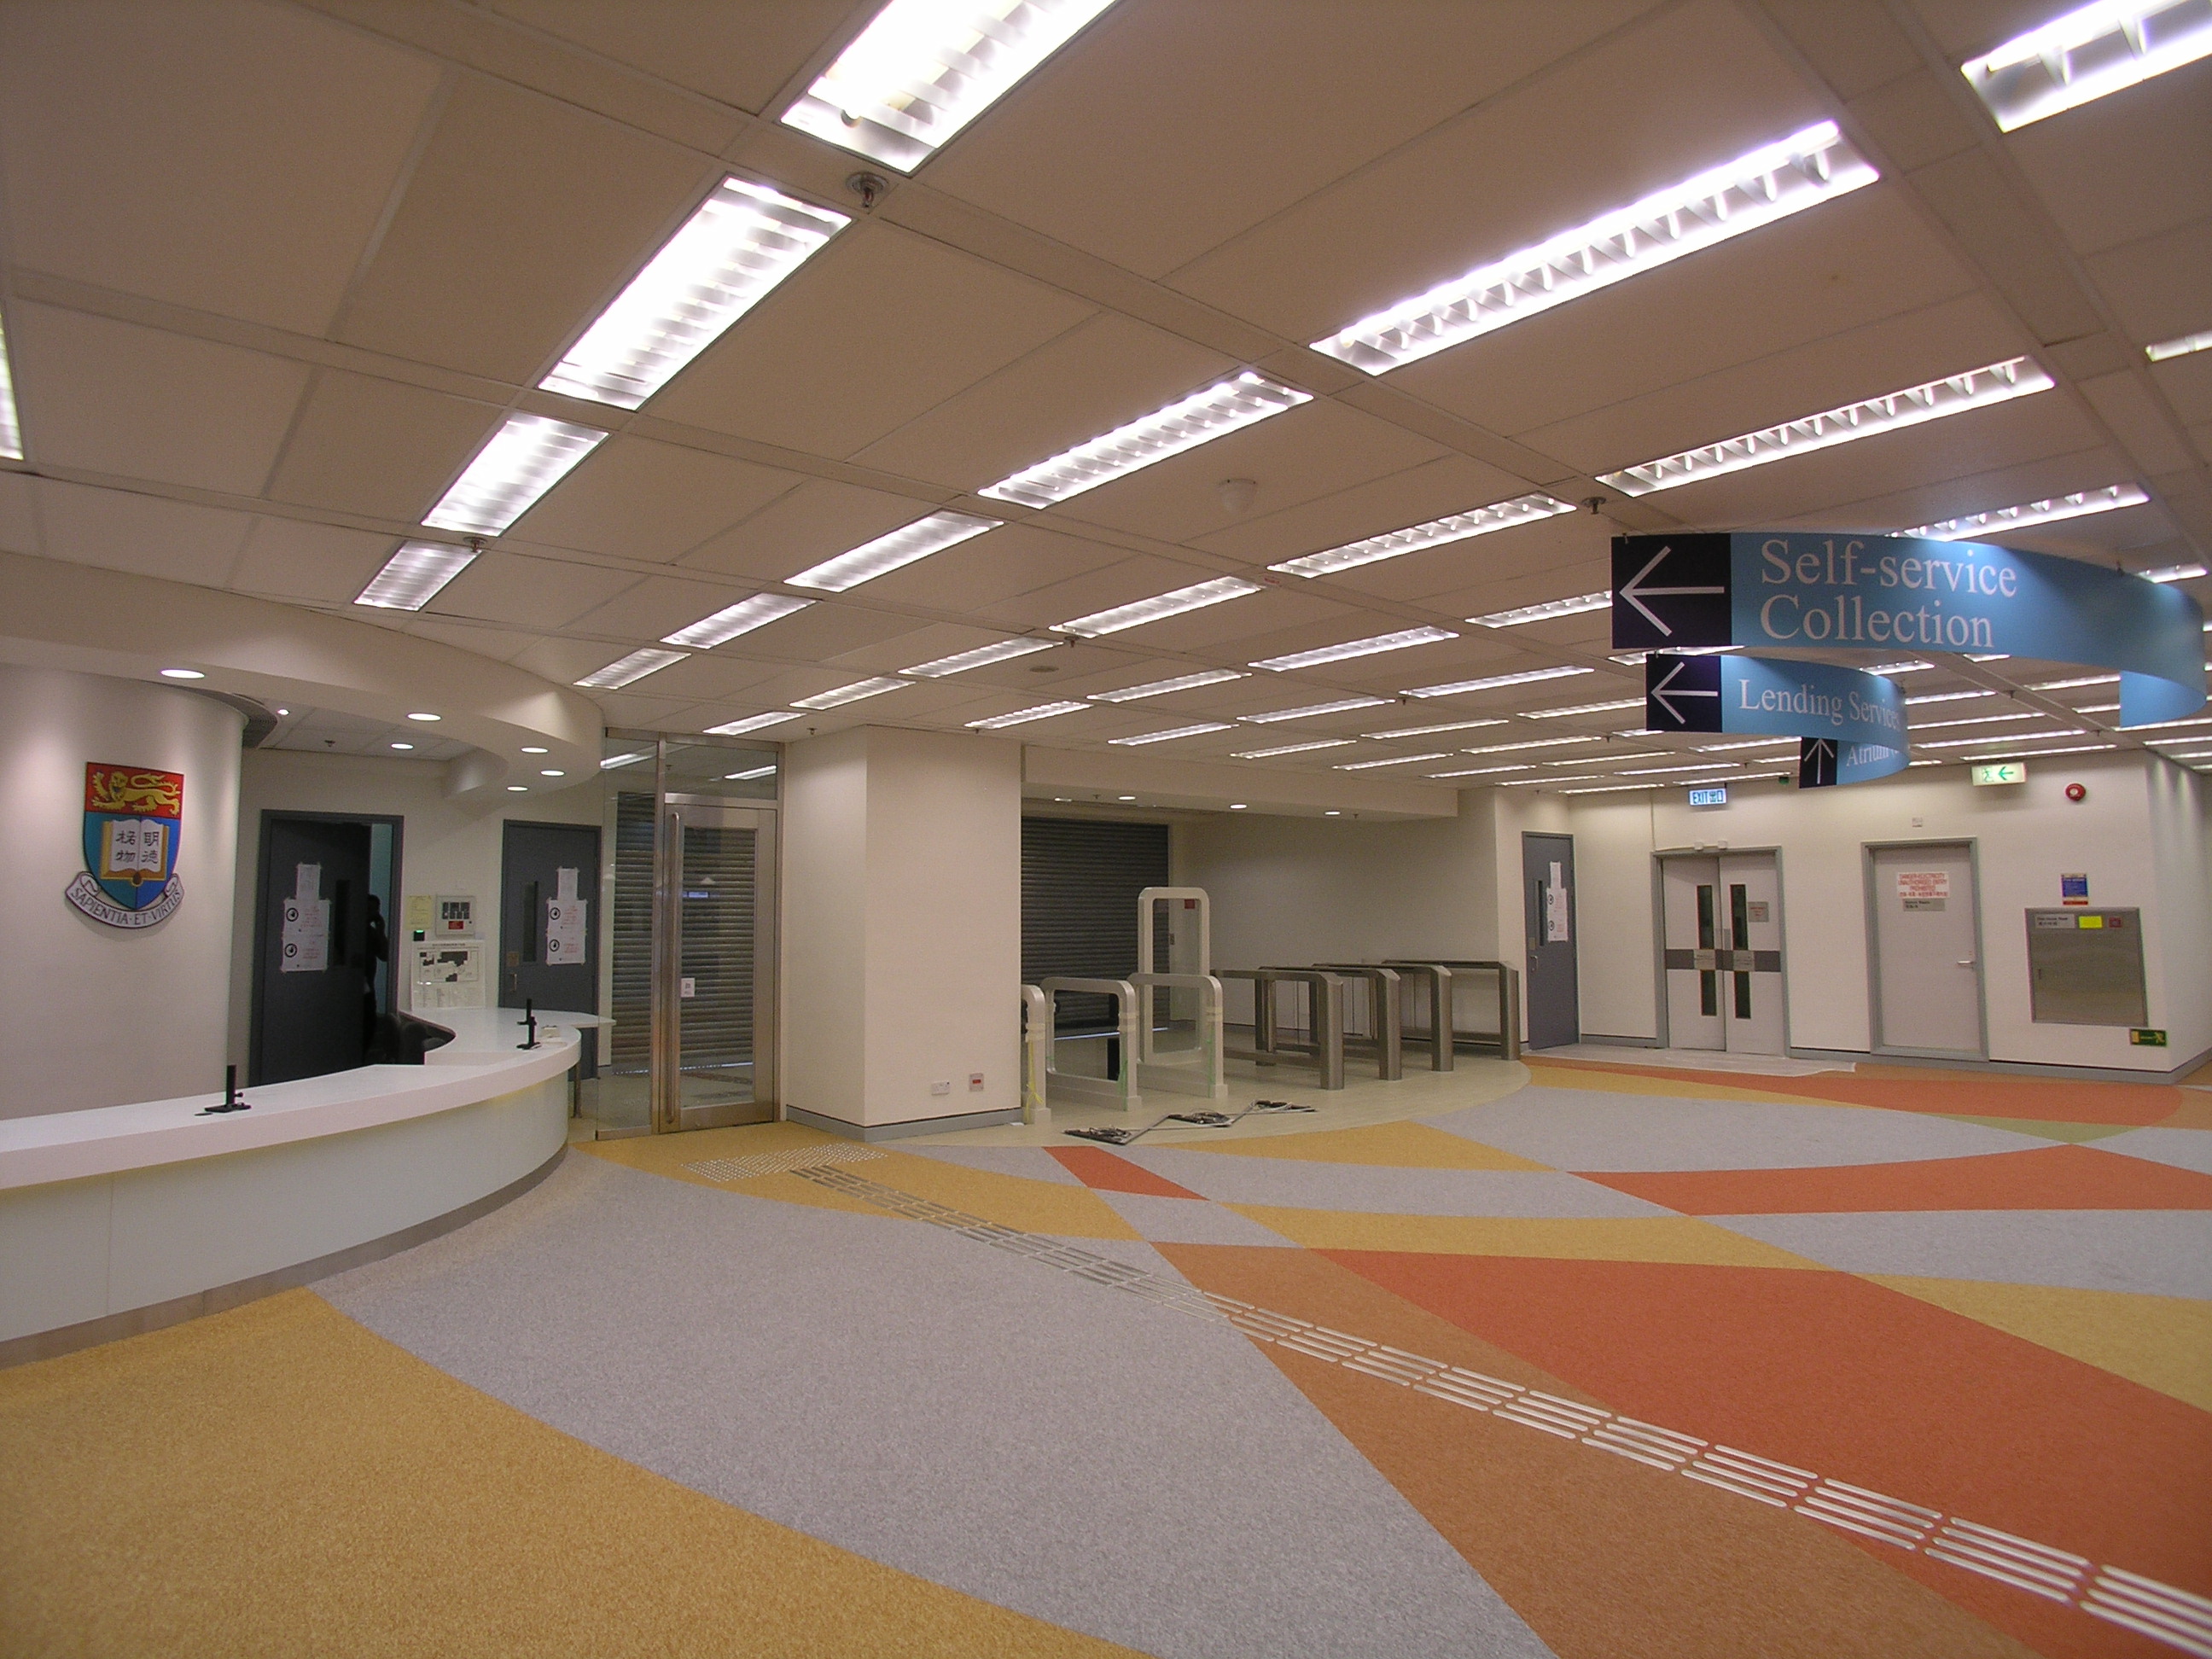 香港大學圖書館大樓(新翼)2樓空間重組工程